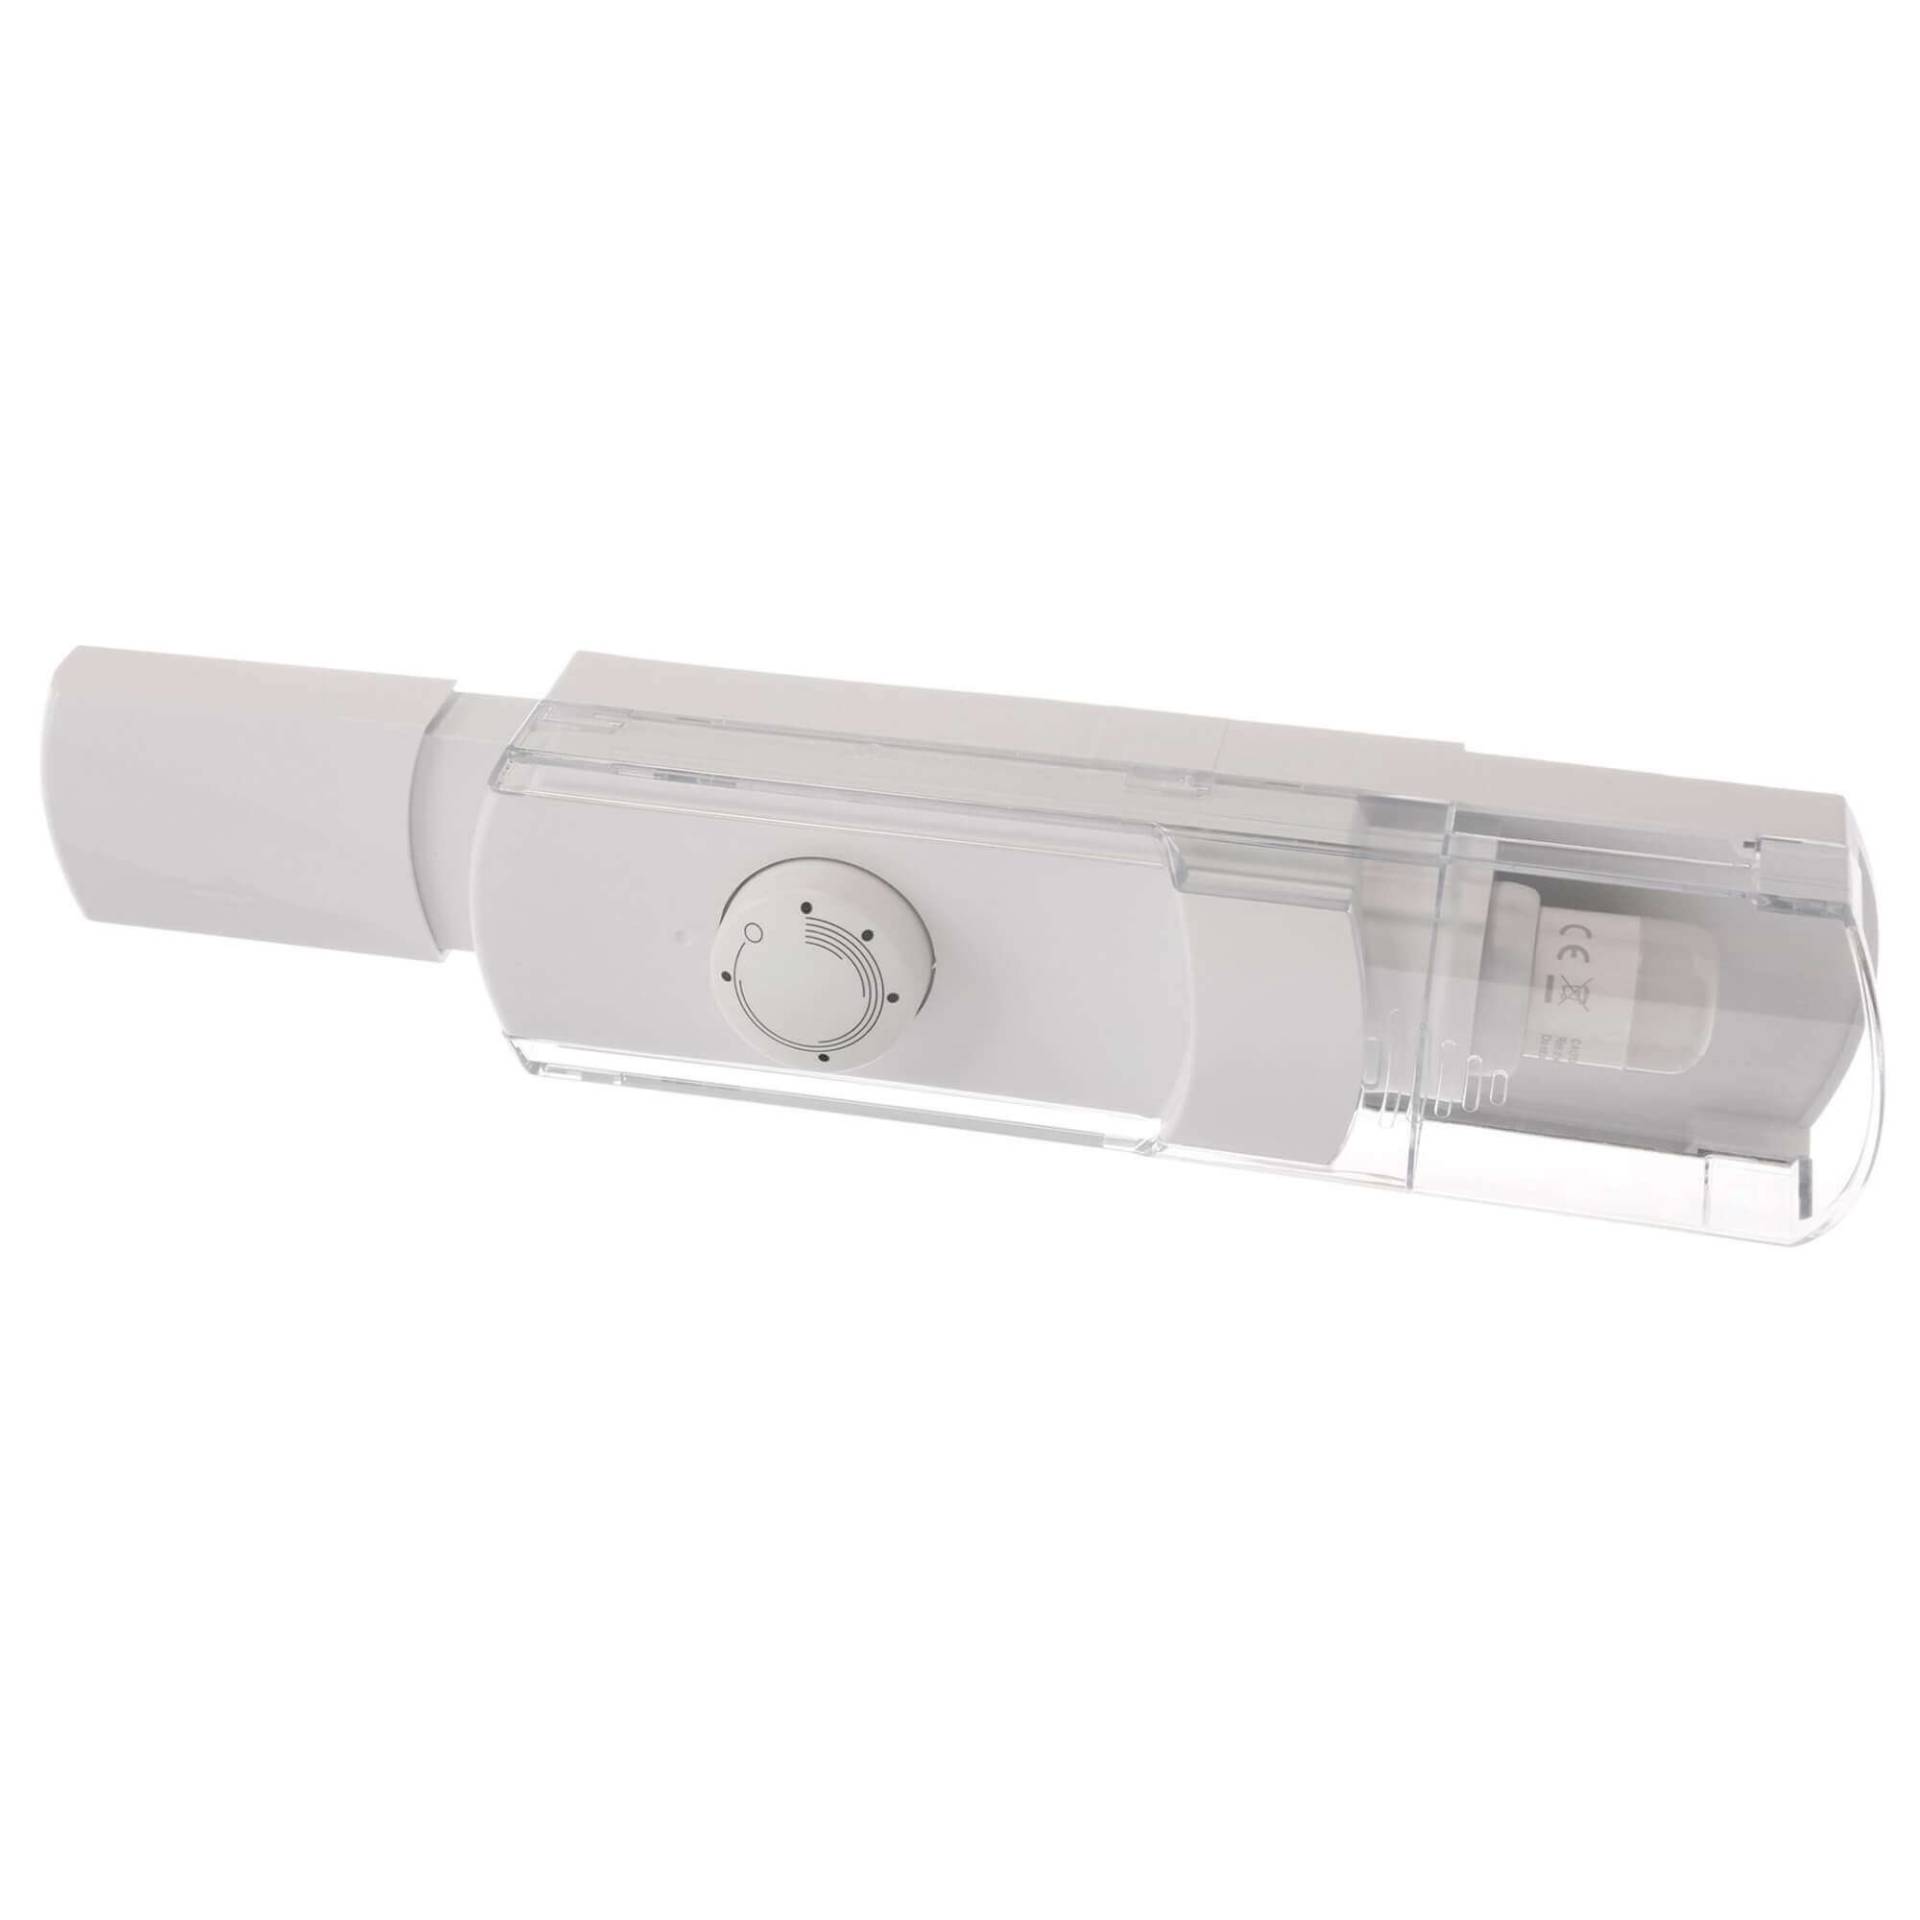 Bedieneinheit mit Thermostat Lampe BSH 12022941 für KühlGefrierKombination (KD-12022941) von BSH (Bosch-Siemens-Hausgeräte)